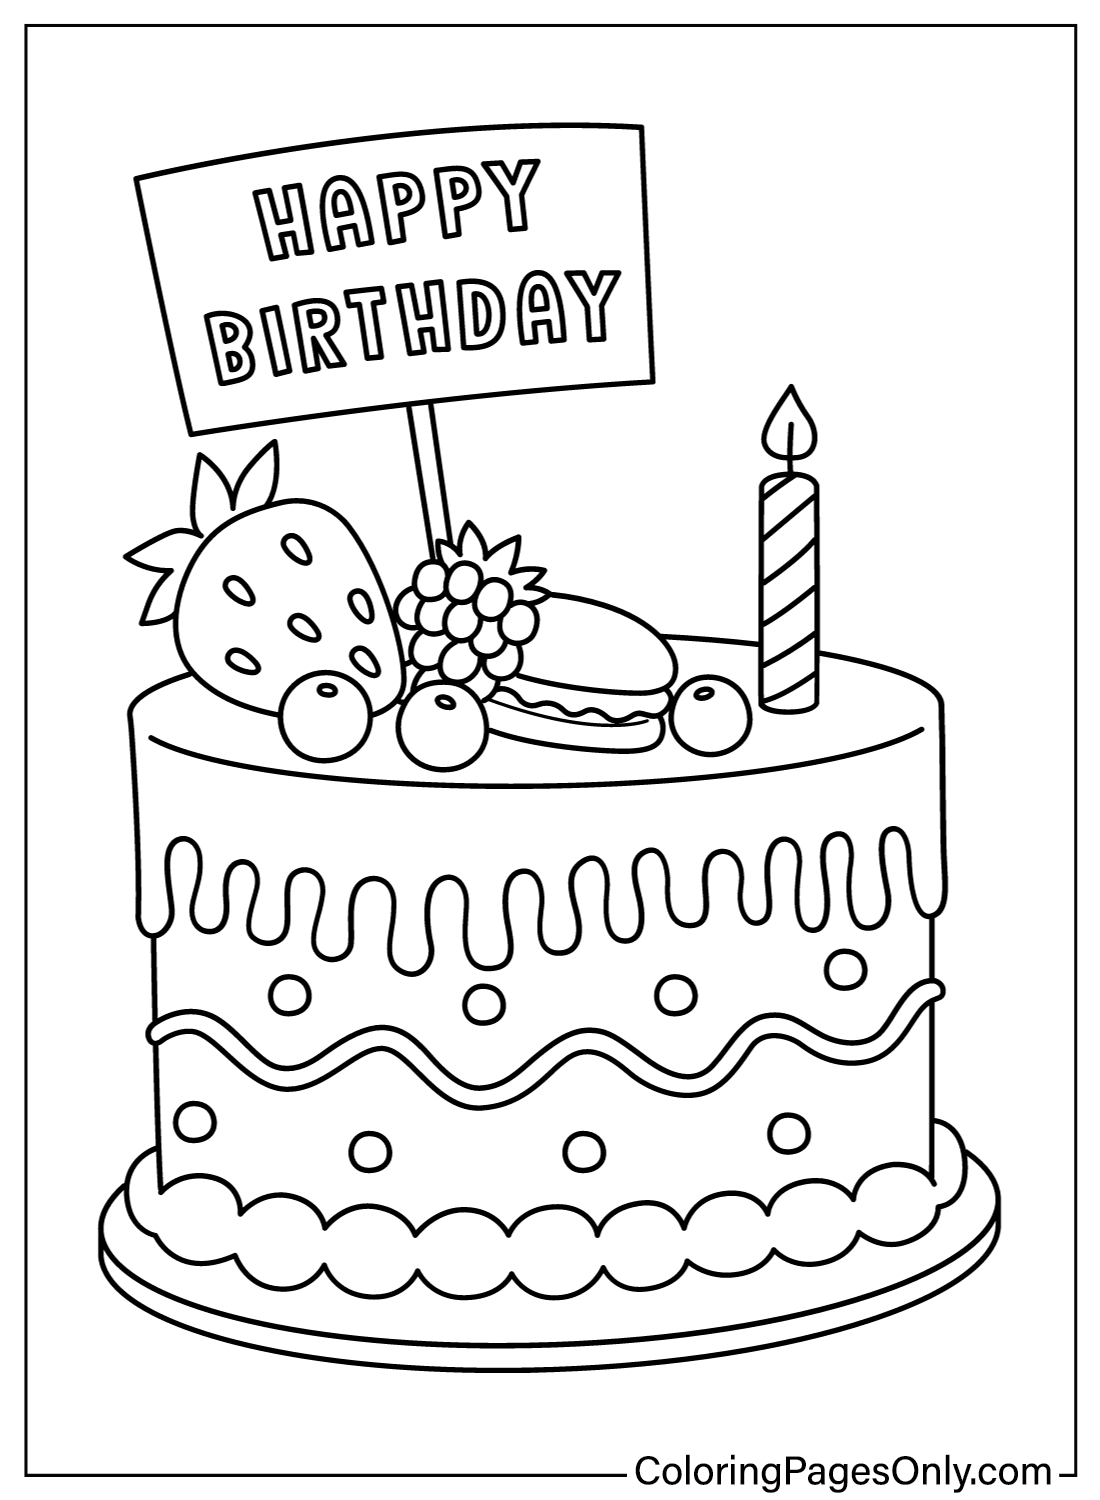 Pagine a colori della torta di compleanno